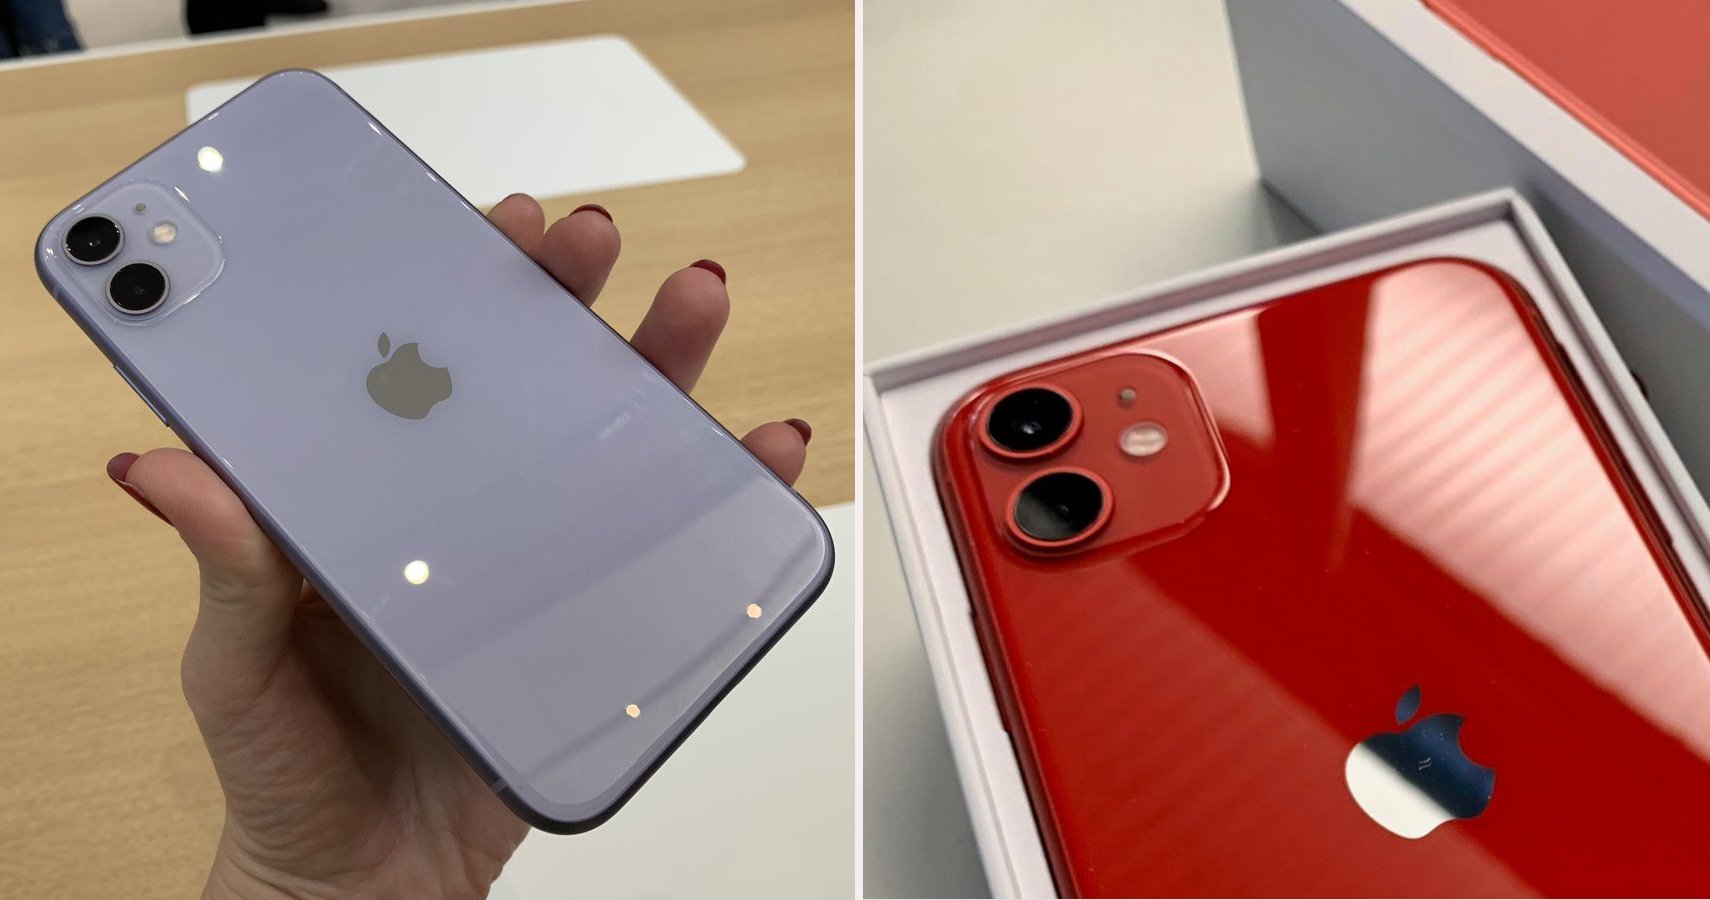 Iphone 11 colors comparison - stDer